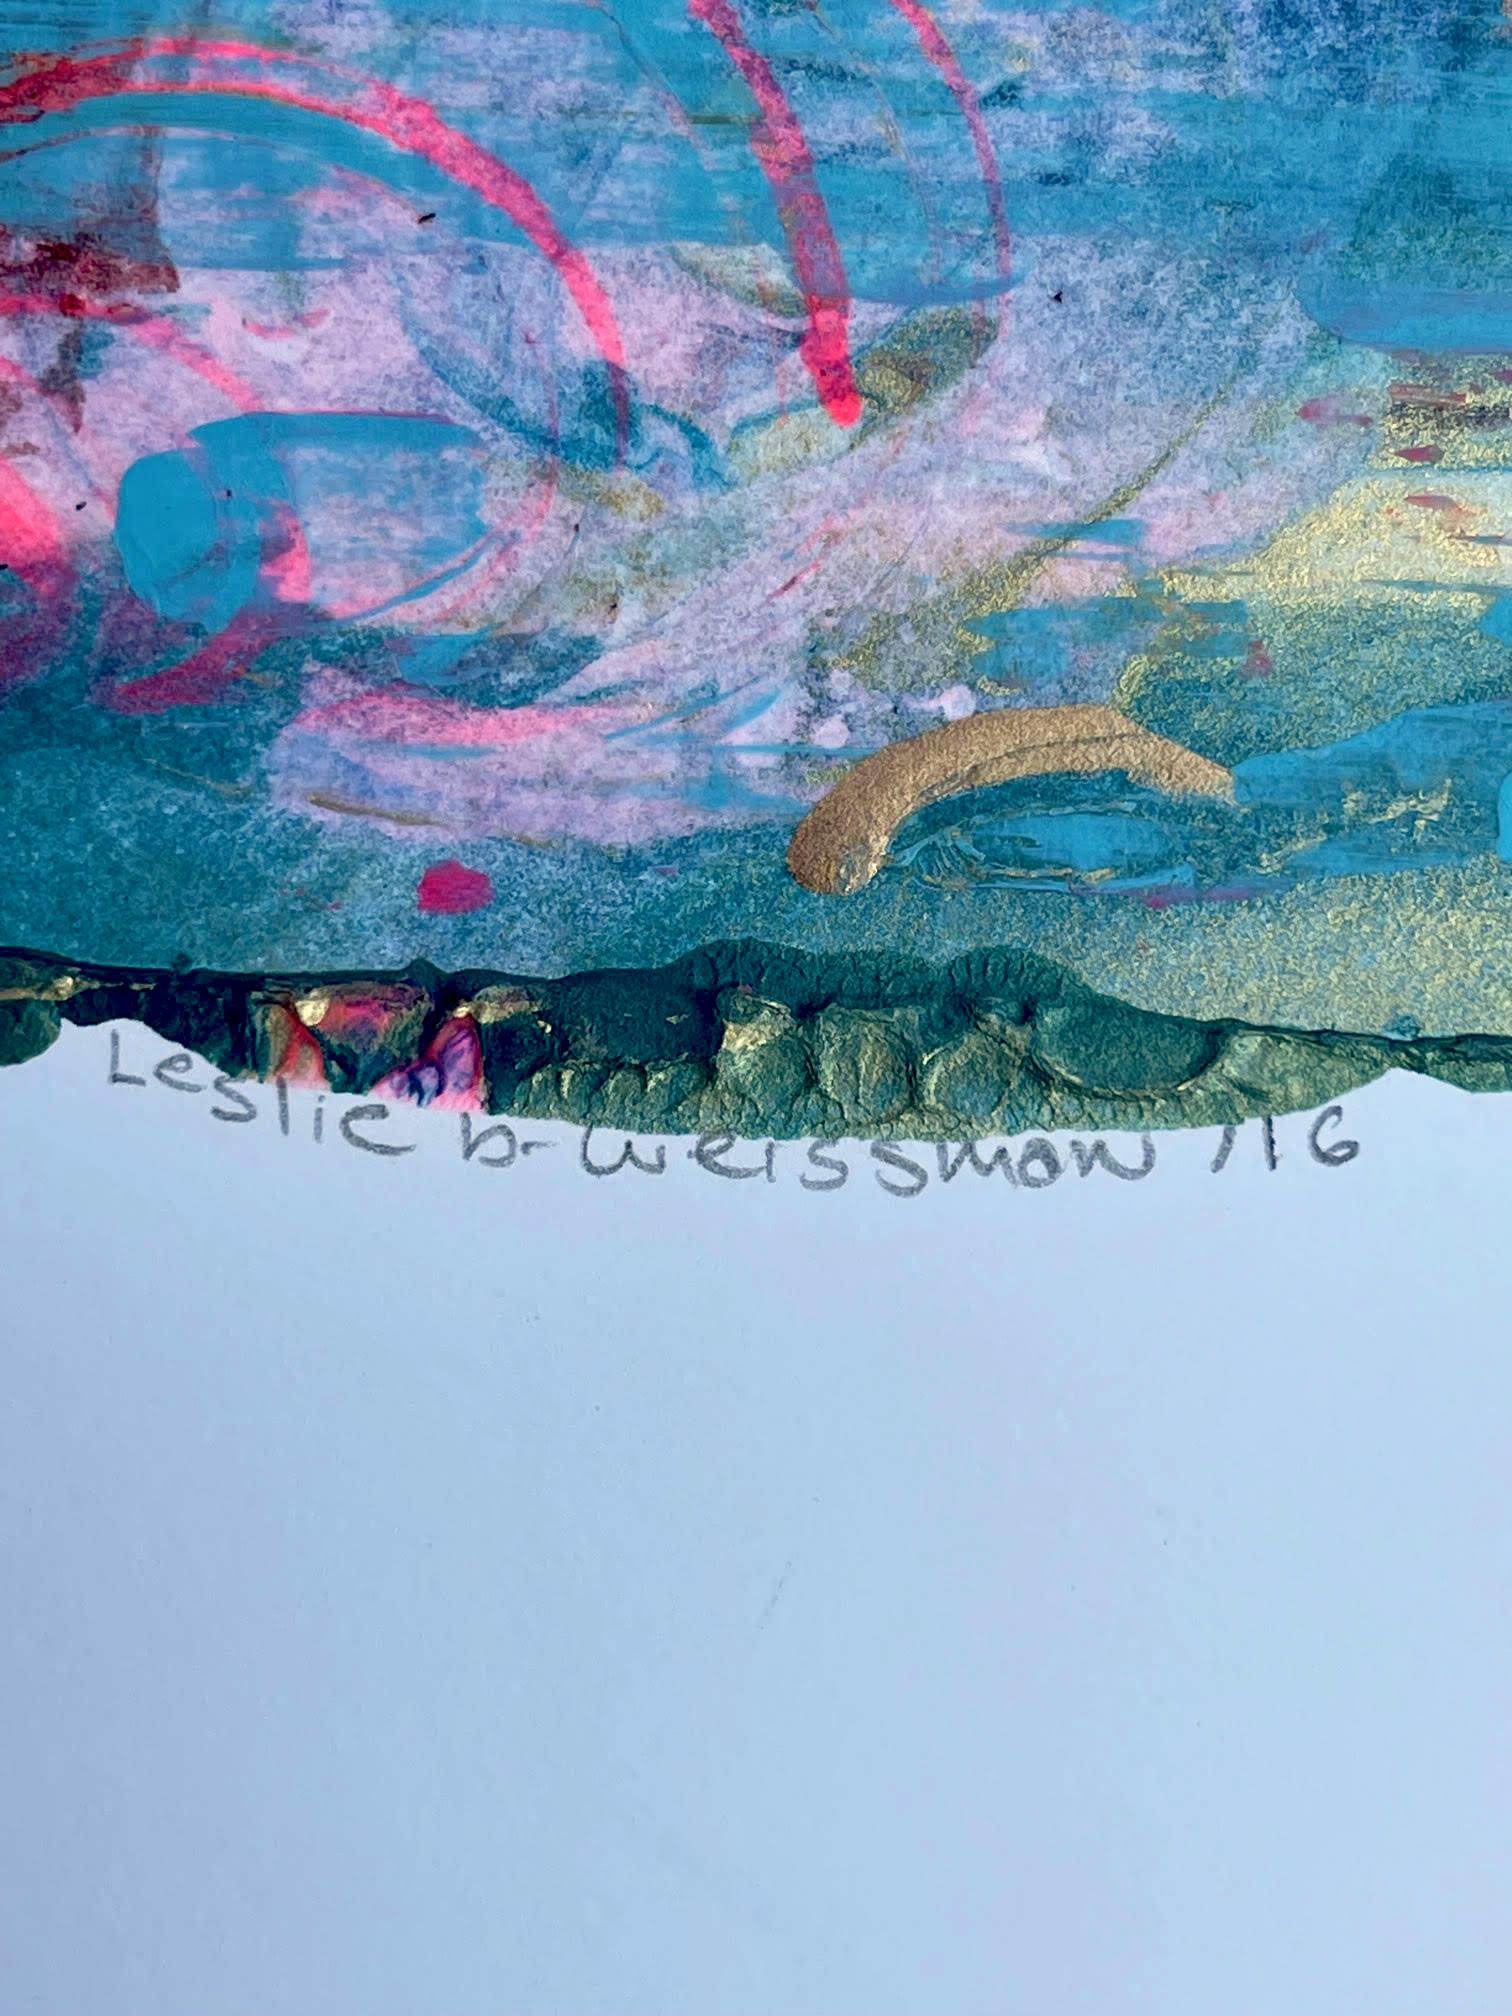 Leslie B. Weissman
Abstraktion ohne Titel, 2016
Acryl und Mischtechnik auf Papier
15 × 18 Zoll
Mit Bleistift signiert und datiert vom Künstler unten links auf der Vorderseite
Ungerahmt
Biographie:
Leslie B. Weissman (geb. 1966, NYC)
Bildung:
Hobart